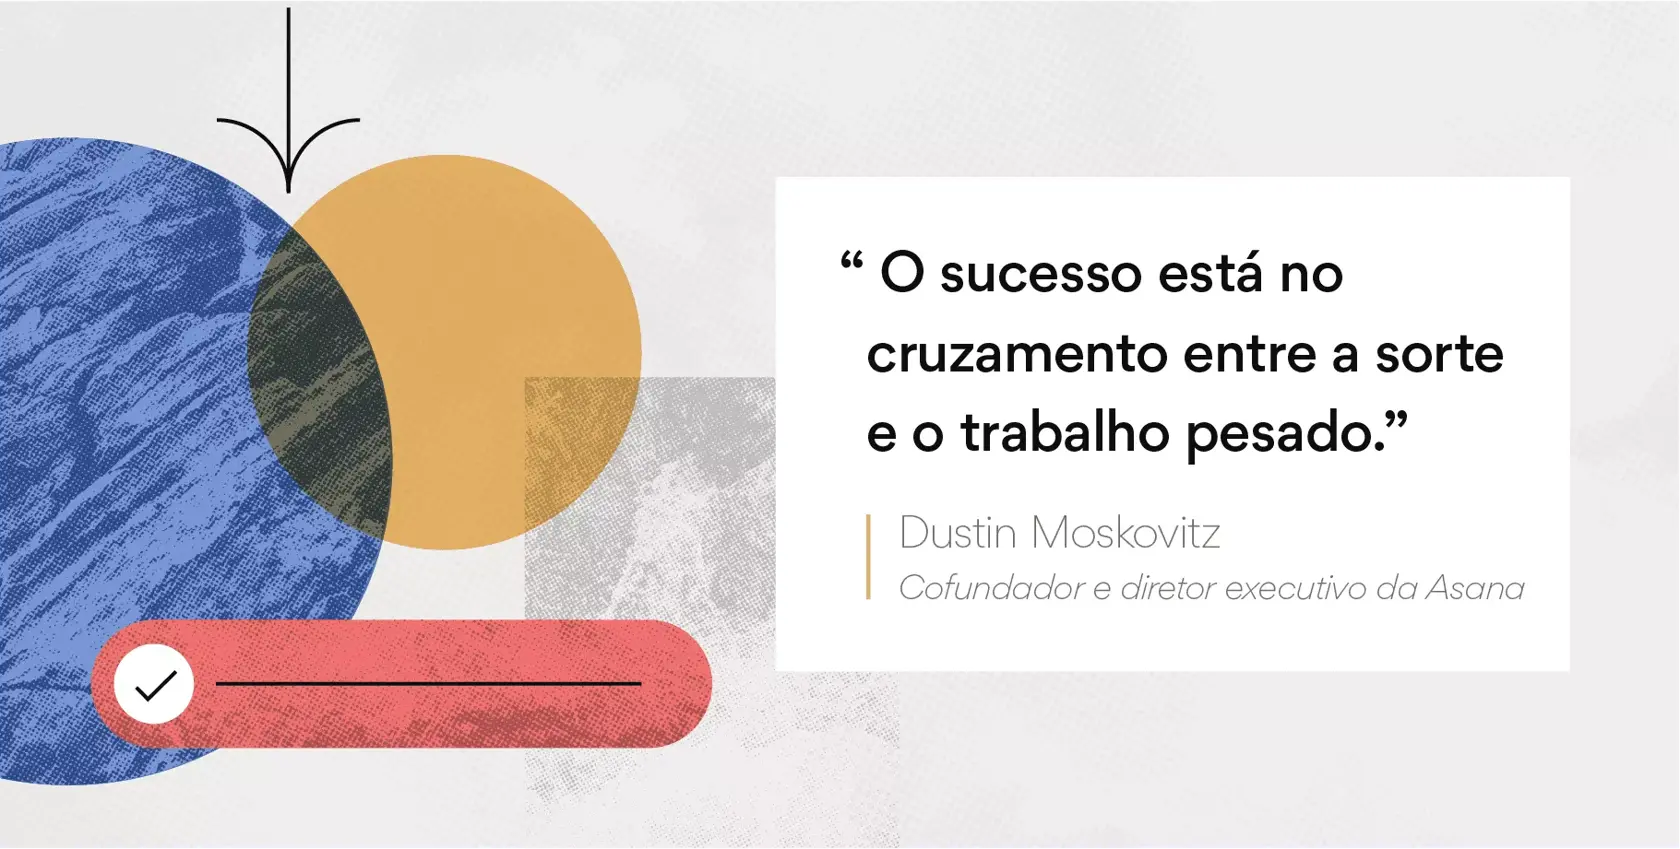 Imagem citação de Dustin Moskovitz para motivação das equipes